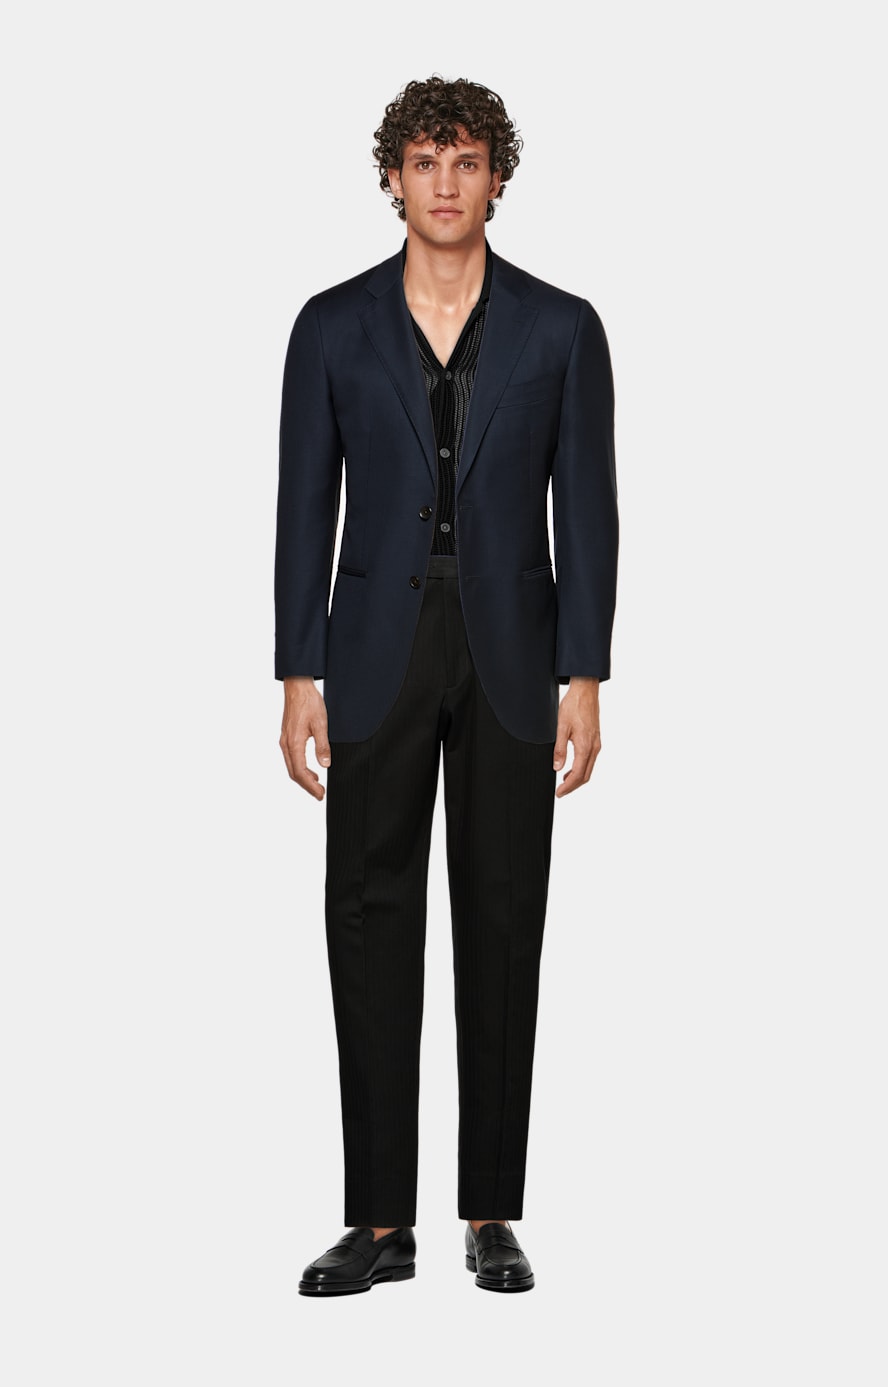 Navy blue suit: Jacket, Vest and Pants 80% wool - C4064